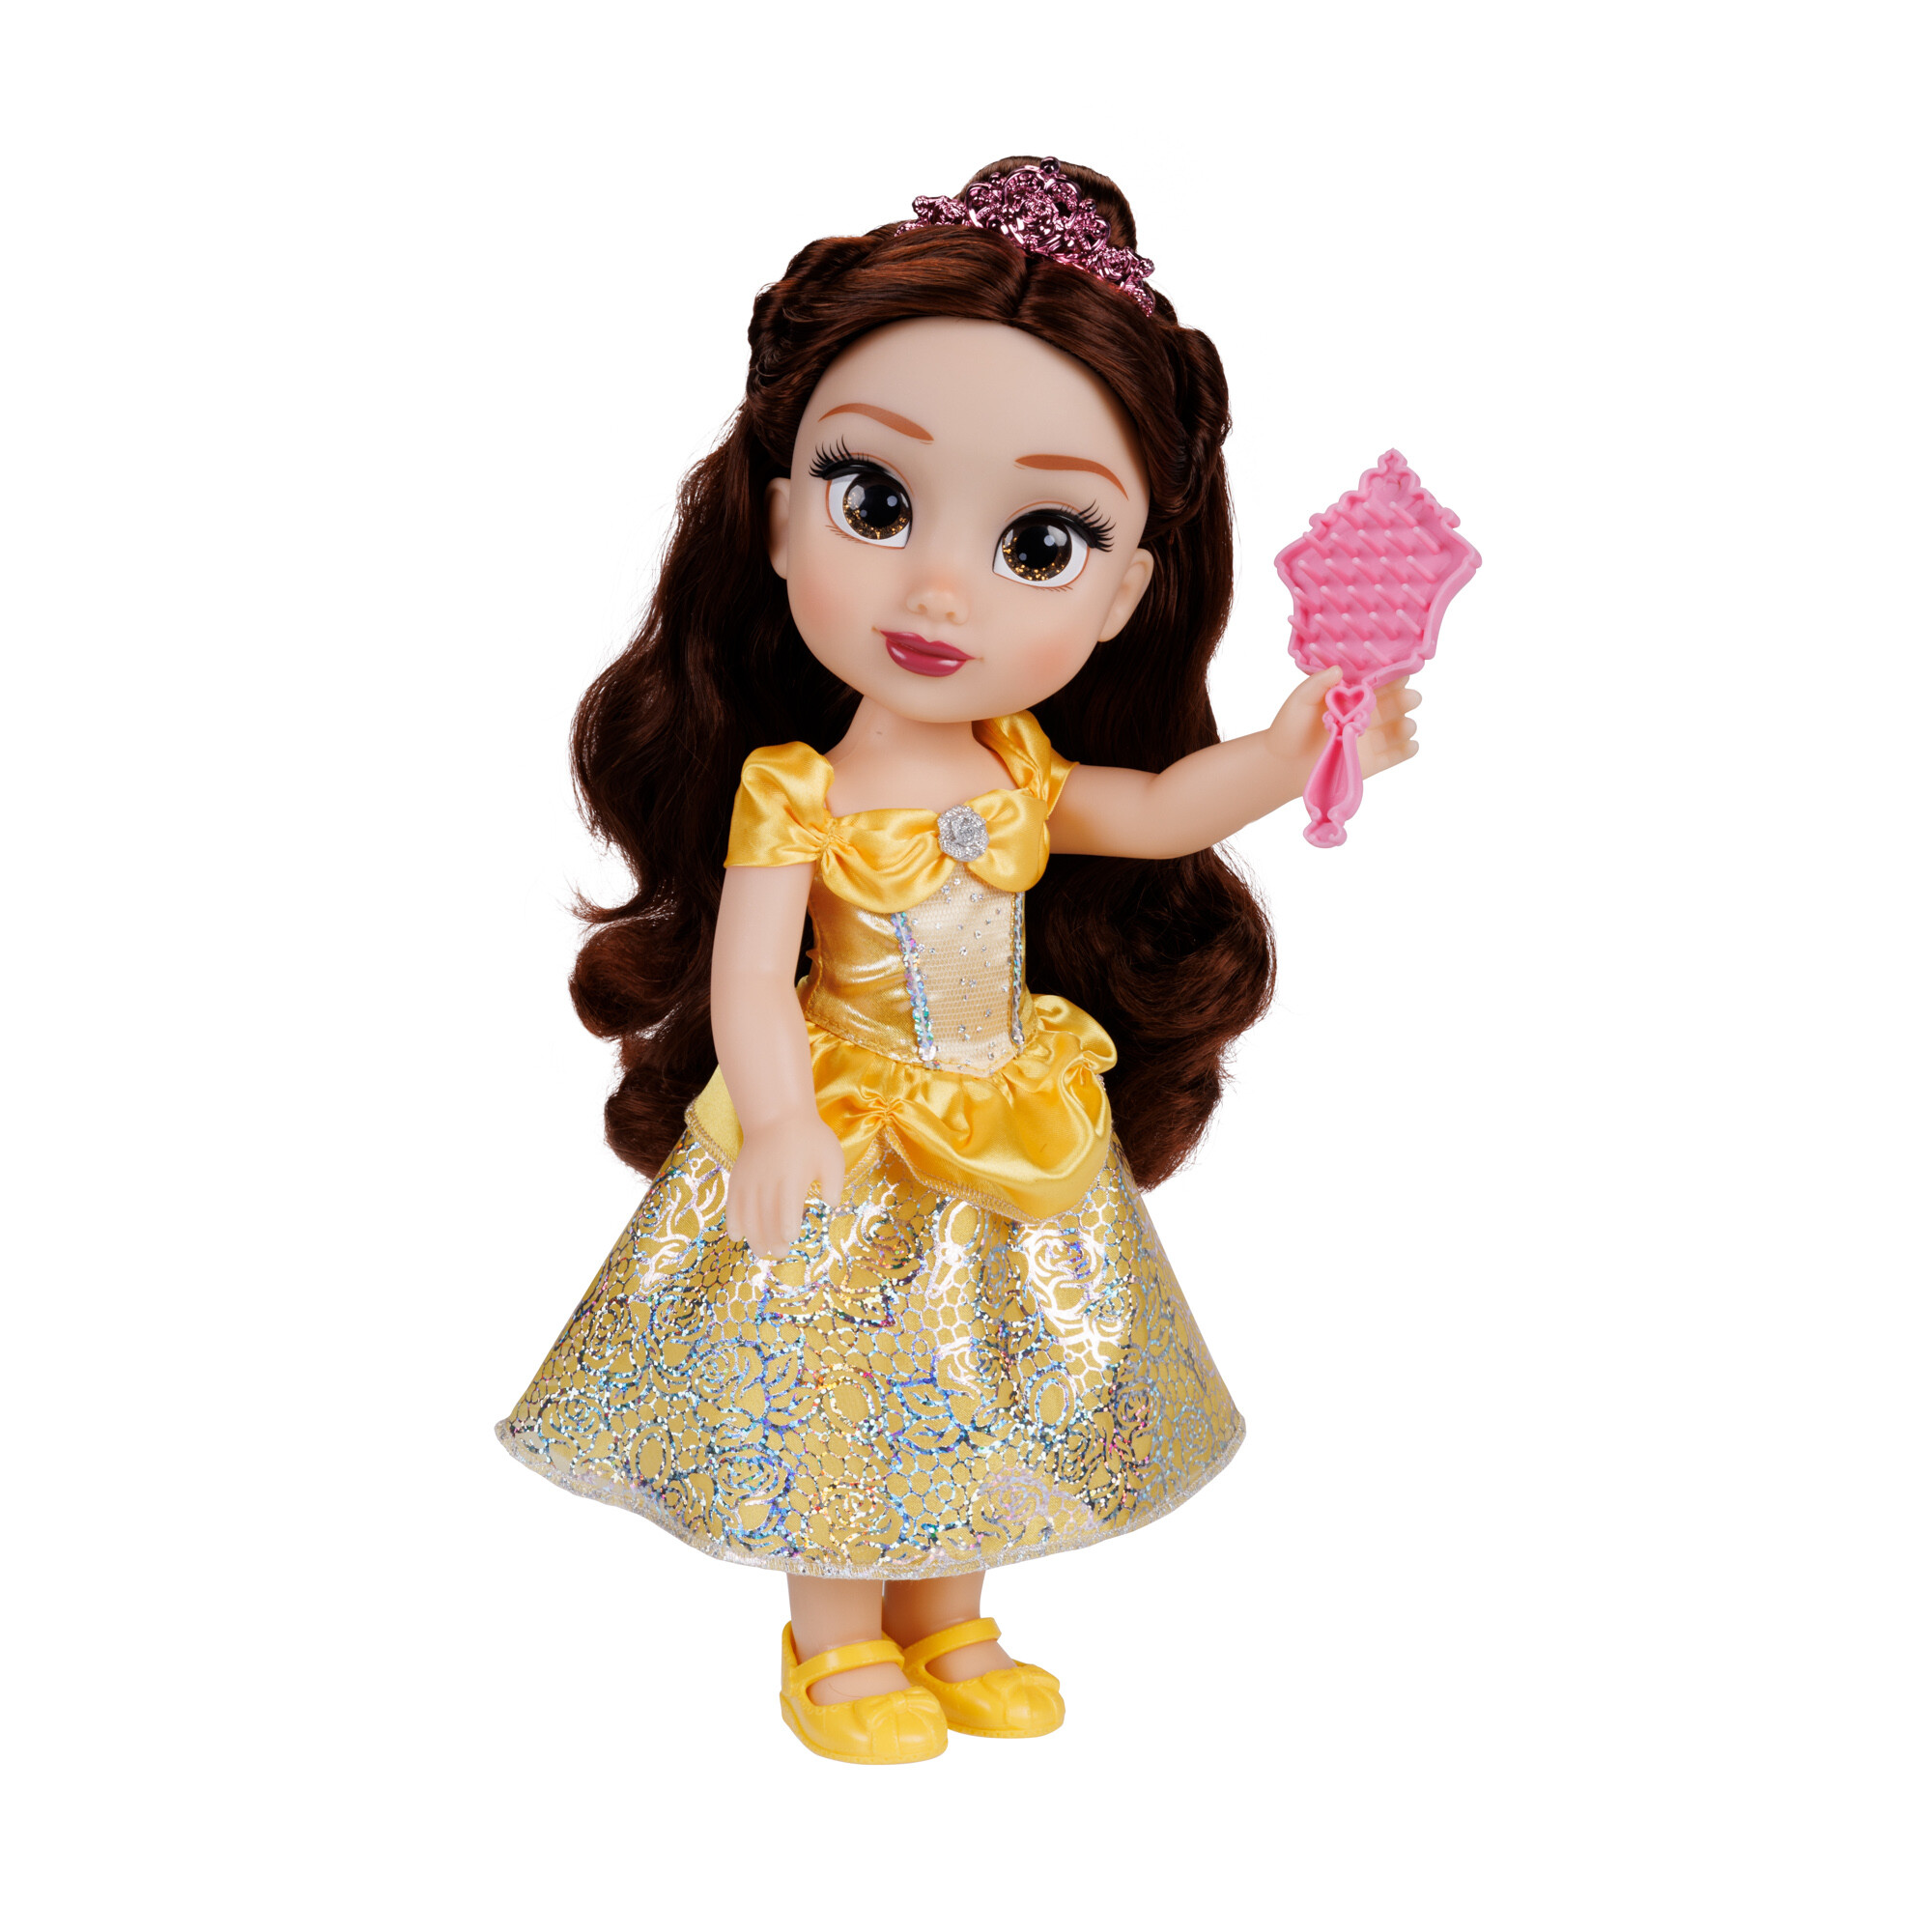 Disney princess bambola da 38 cm di belle con occhi scintillanti! - DISNEY PRINCESS